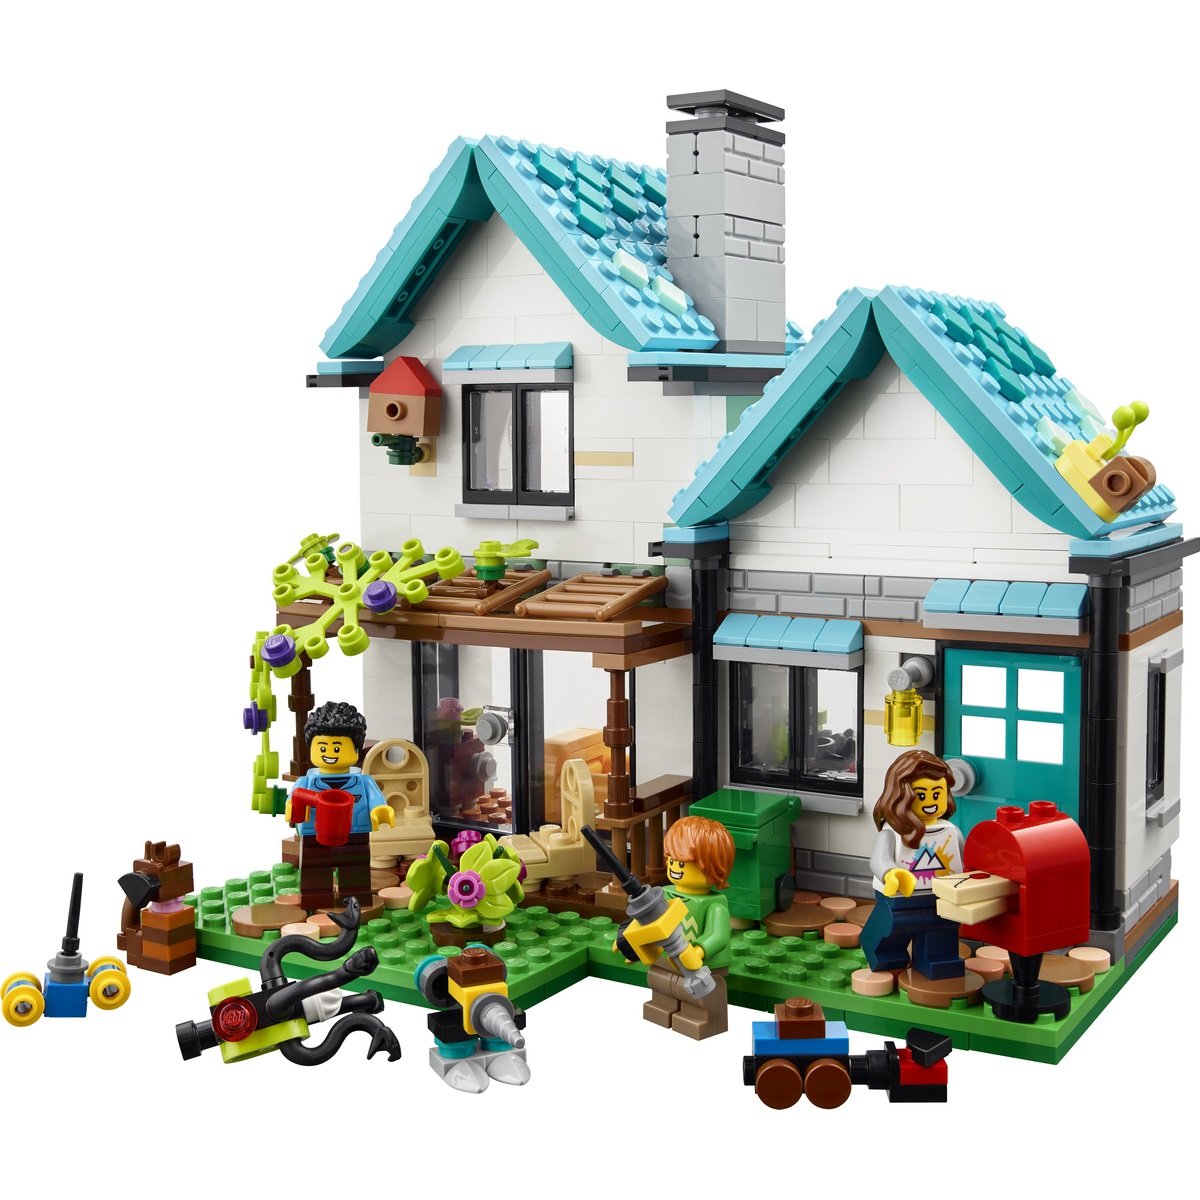 Cette maison en Lego bluffera tous ceux qui ont une âme d'enfant - Elle